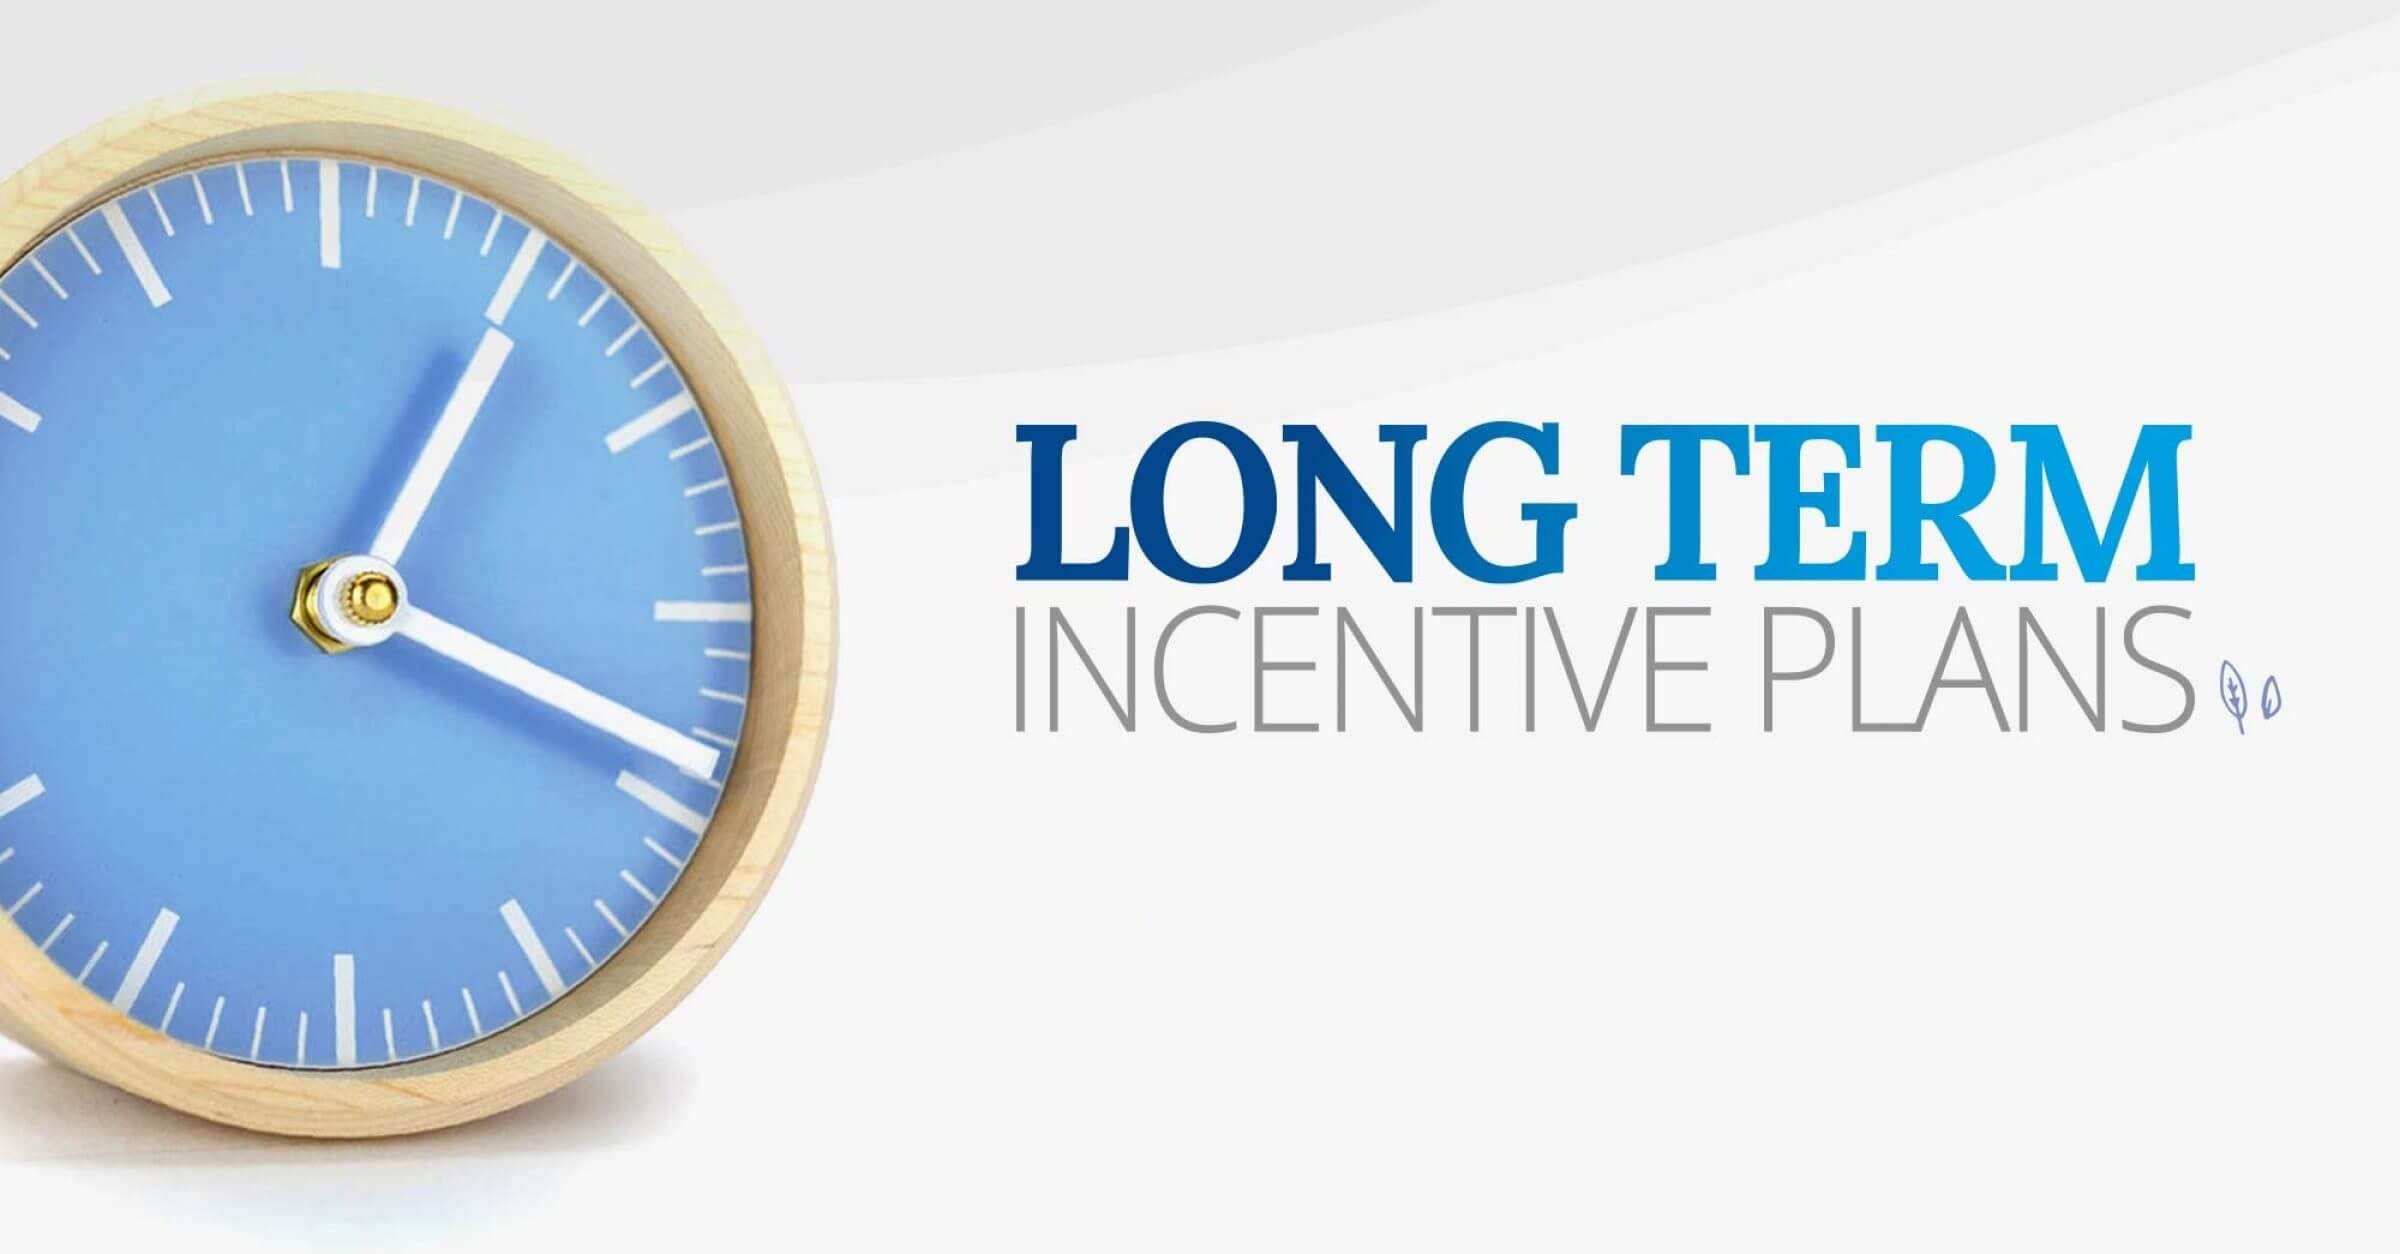 Long-term incentive plan (LTIP) guide 2022